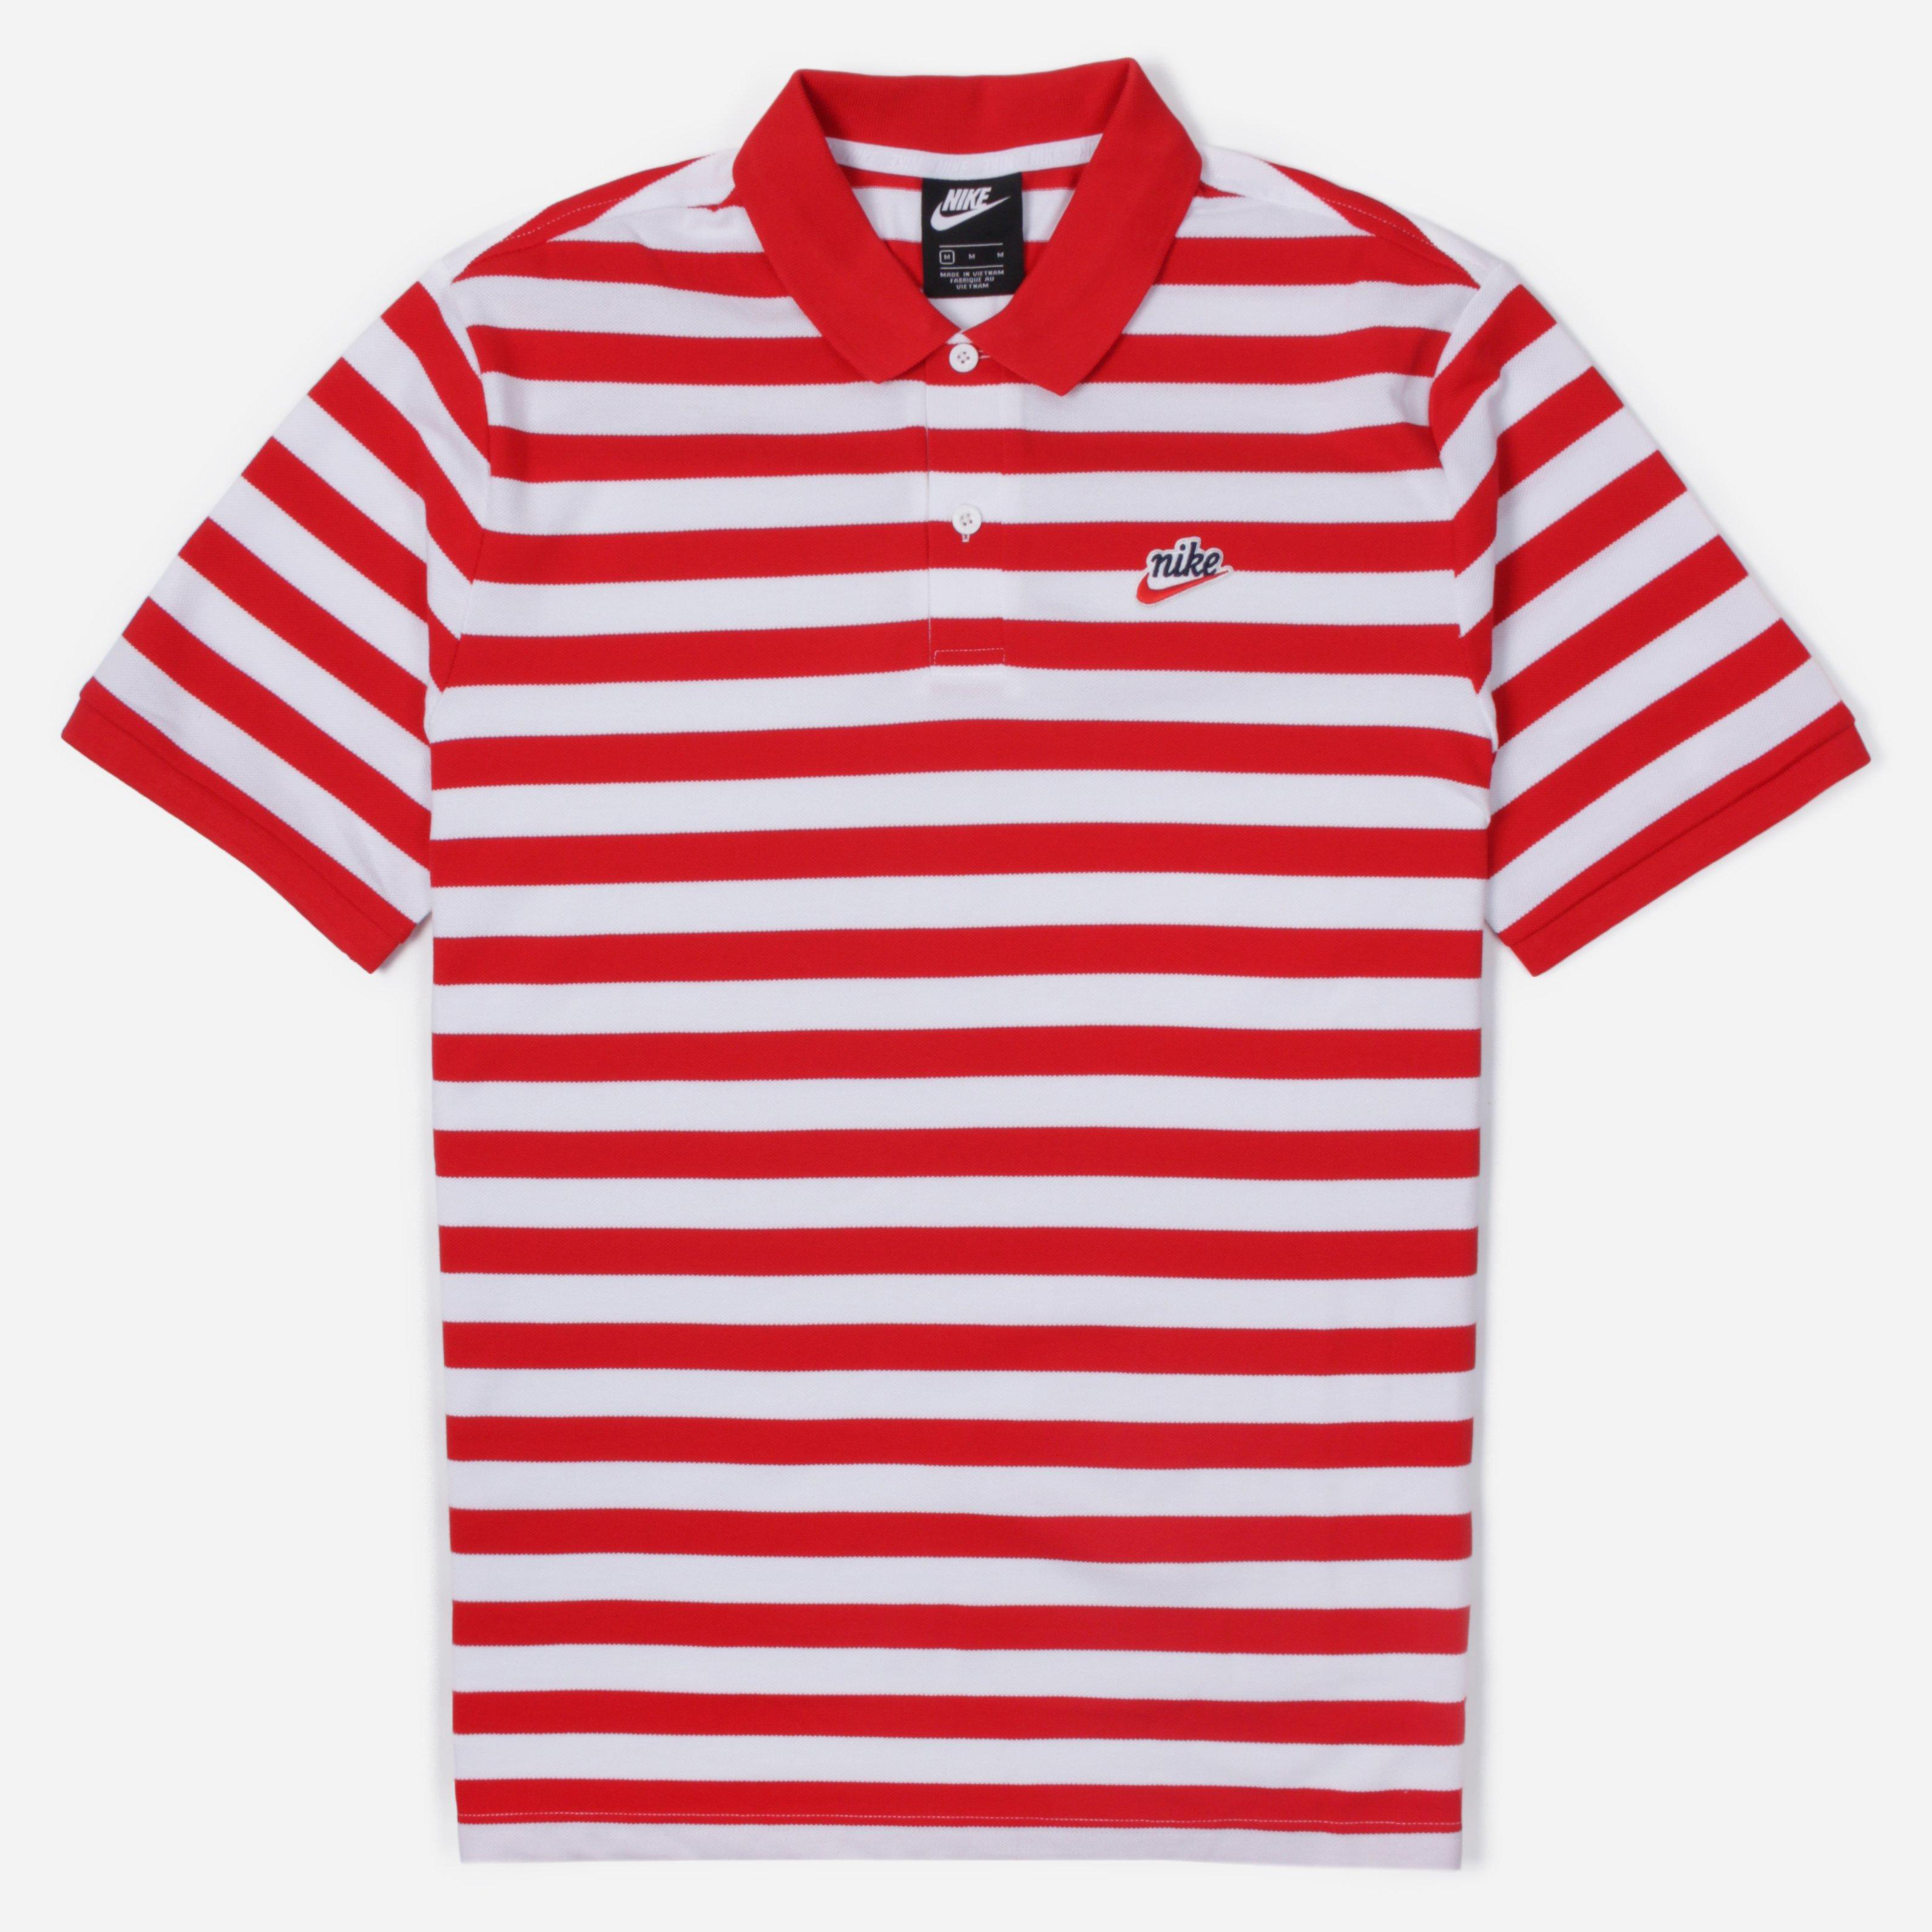 Nike Striped Polo Shirts United Kingdom, SAVE 54% - fearthemecca.com